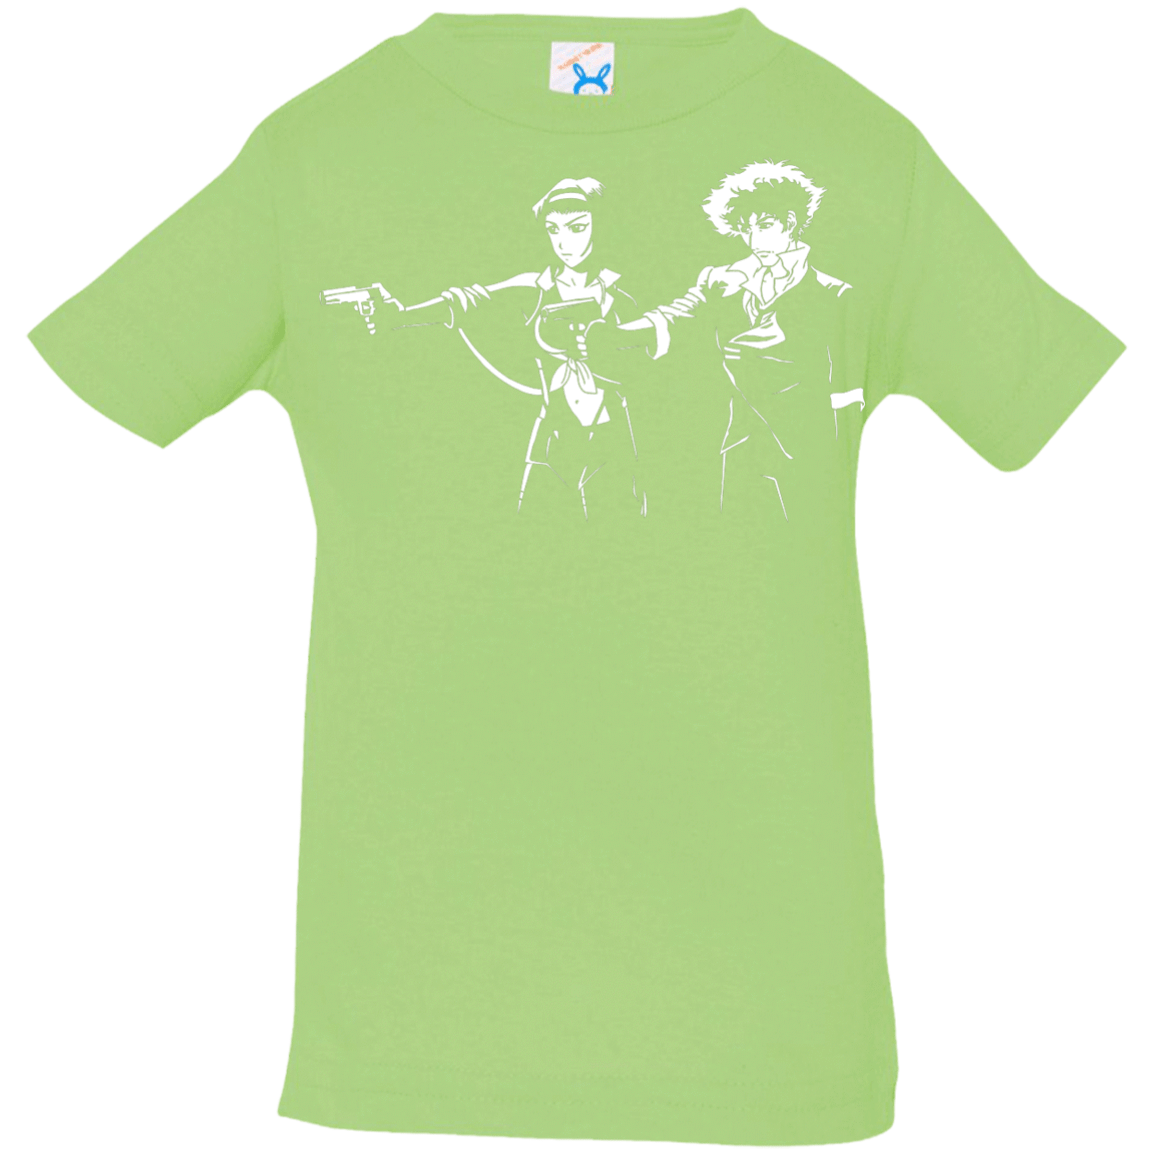 Cowboy Fiction Infant Premium T-Shirt